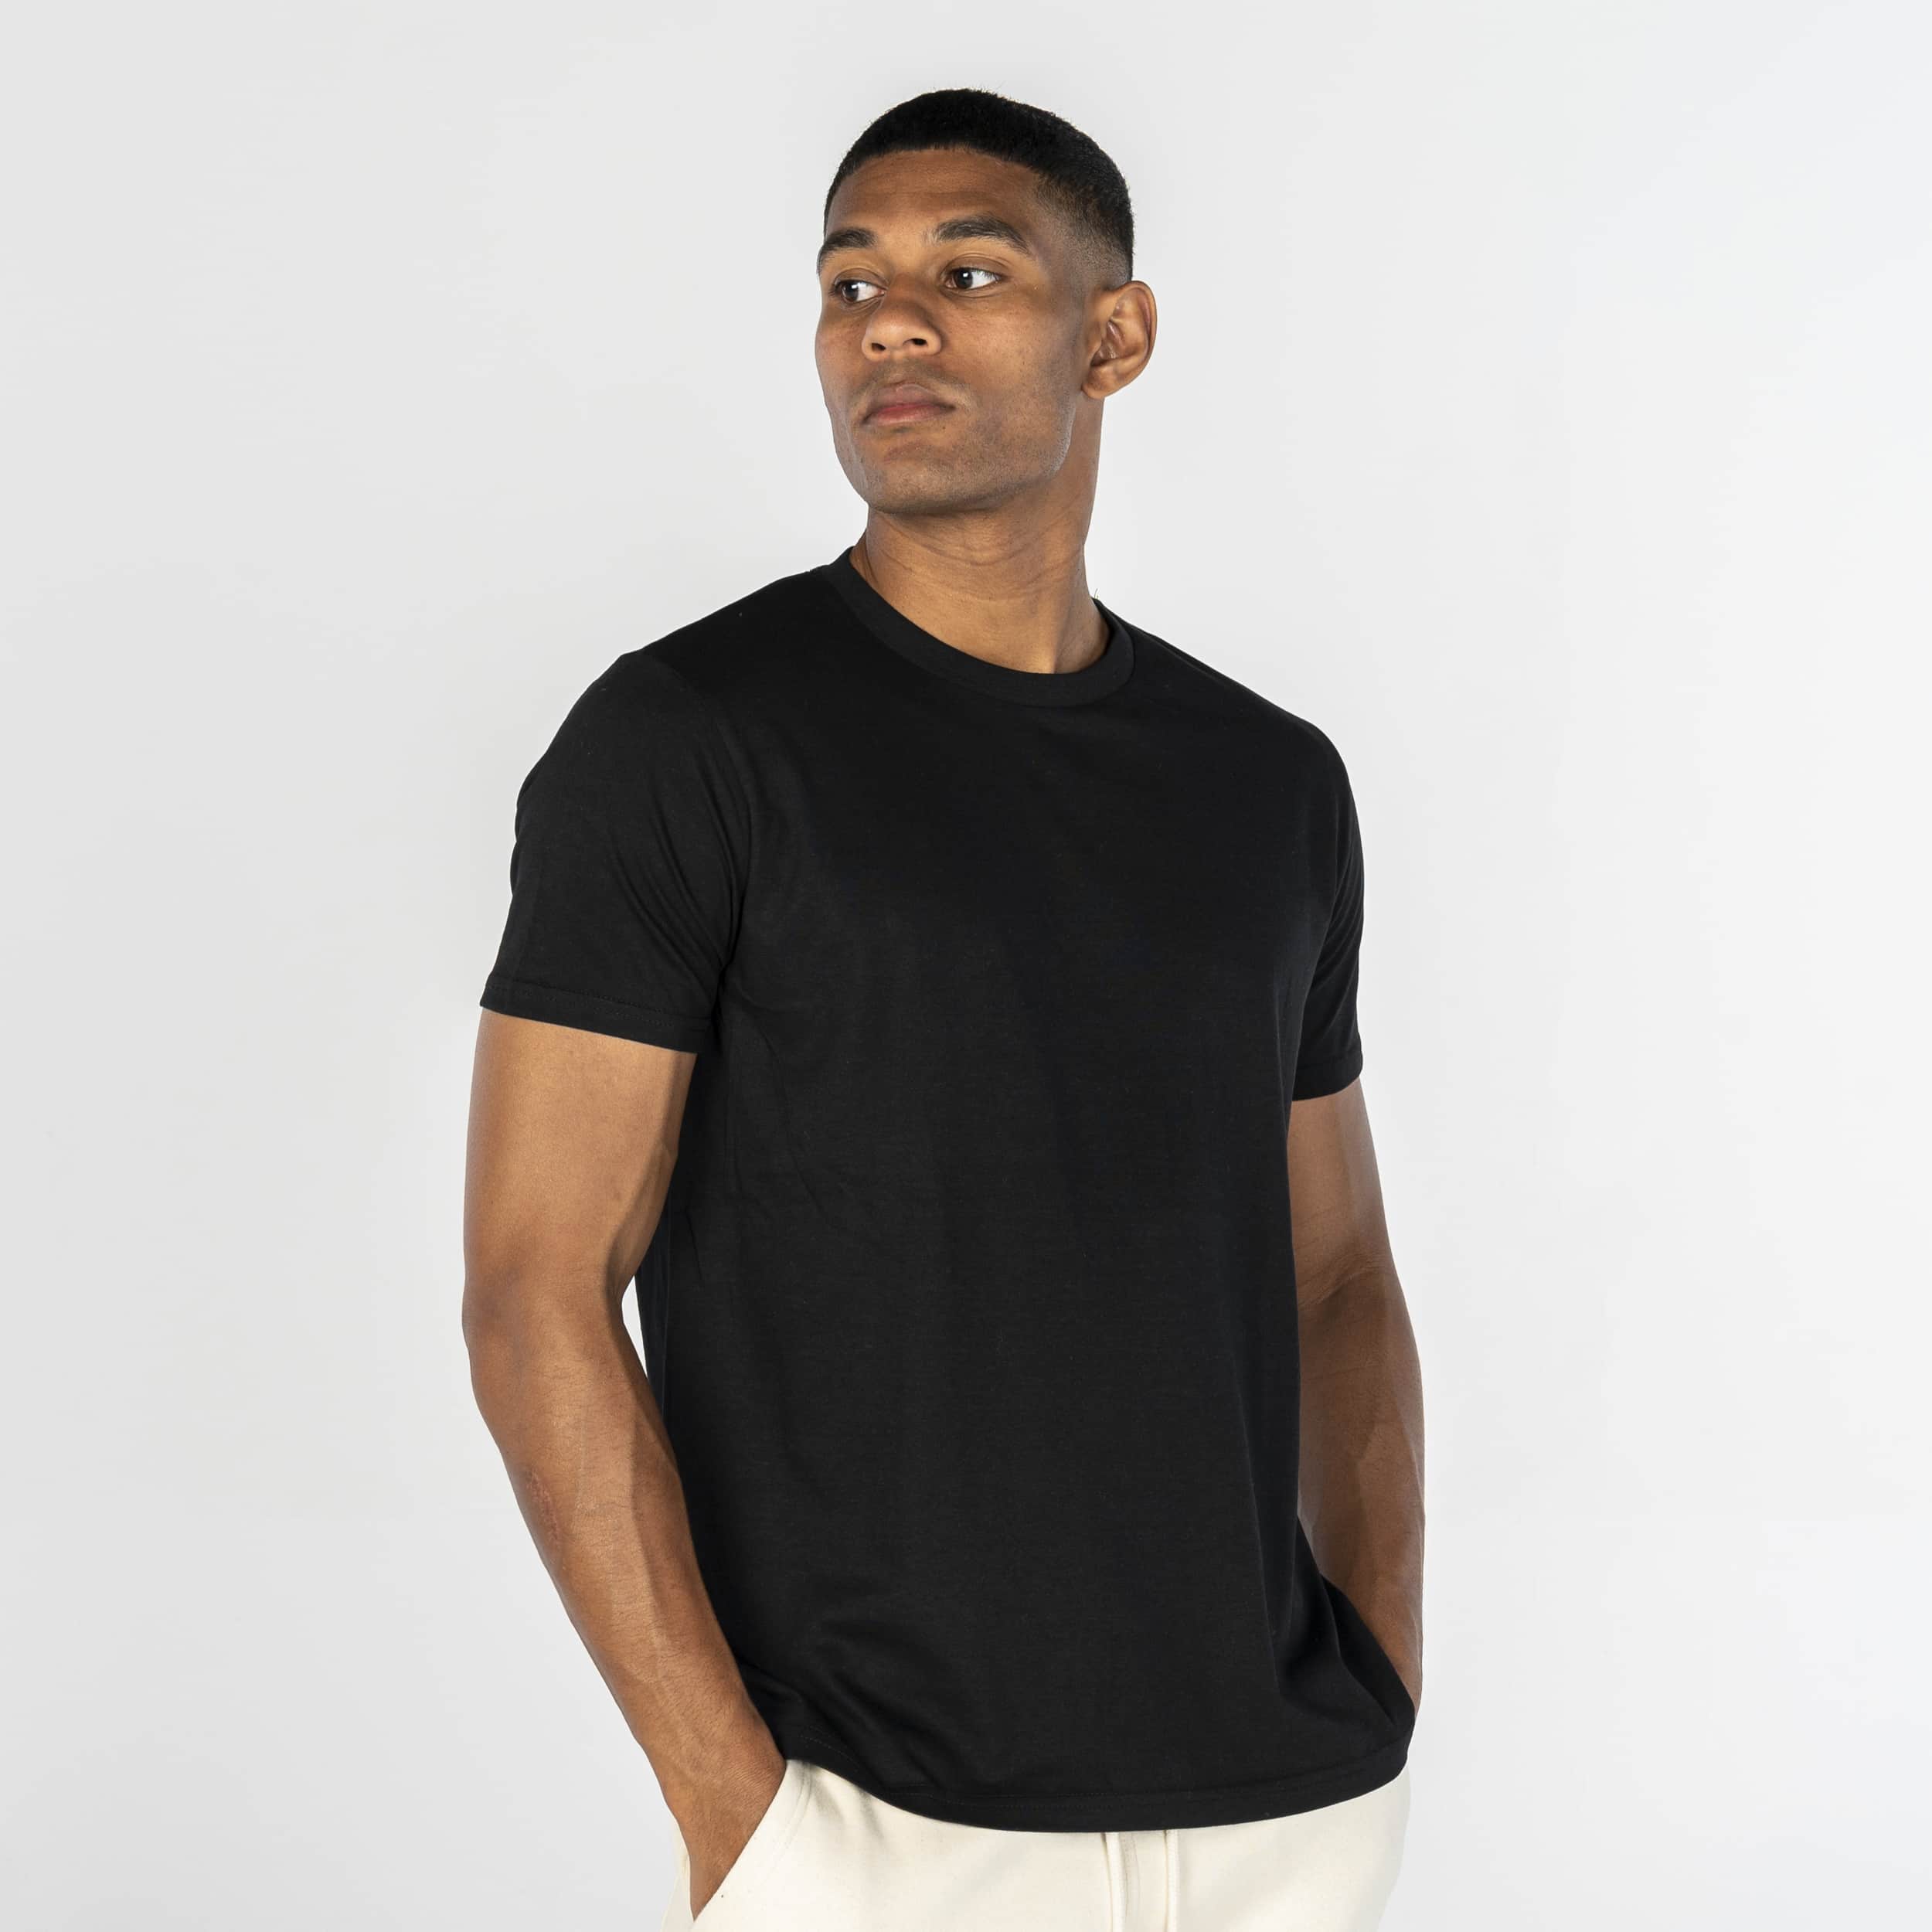 Men's Plain T-shirt - Black